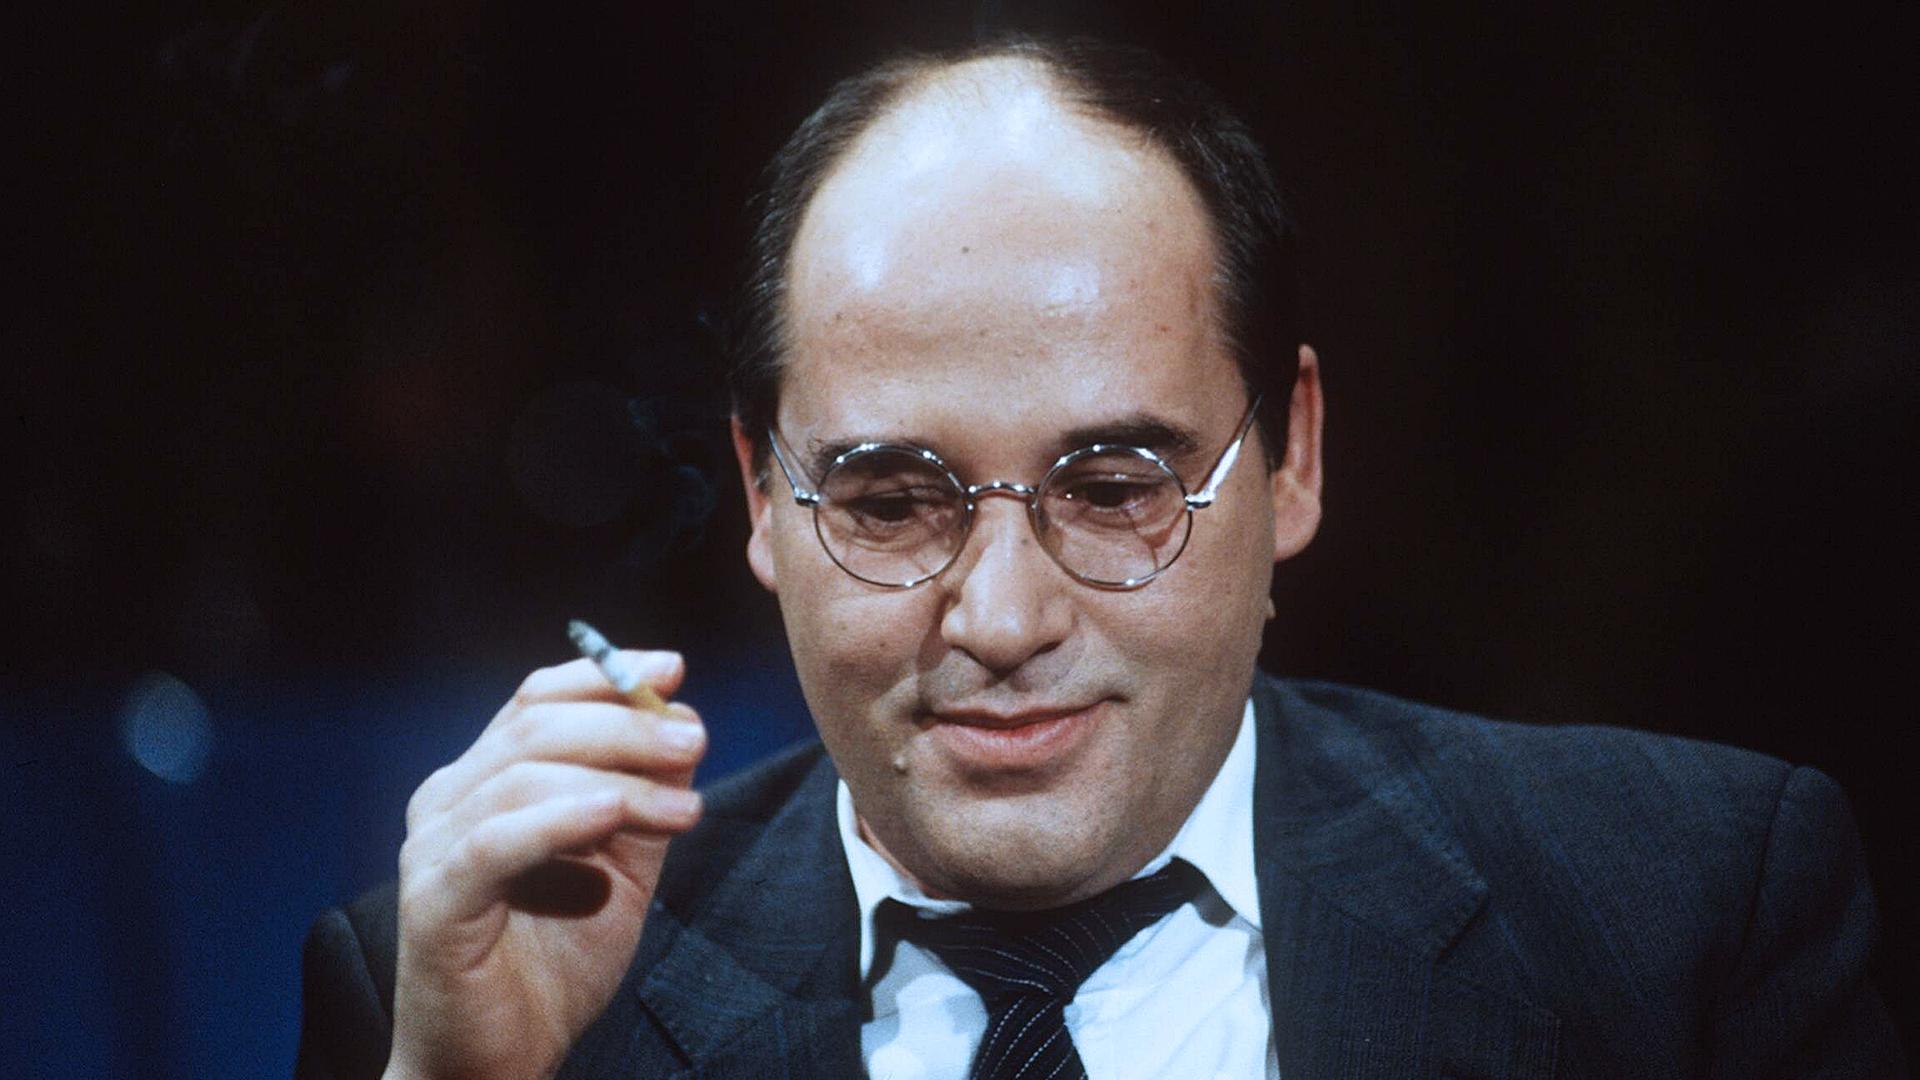 Archiv: Eine Zigarette rauchender Gregor Gysi, aufgenommen am 01.03.1993